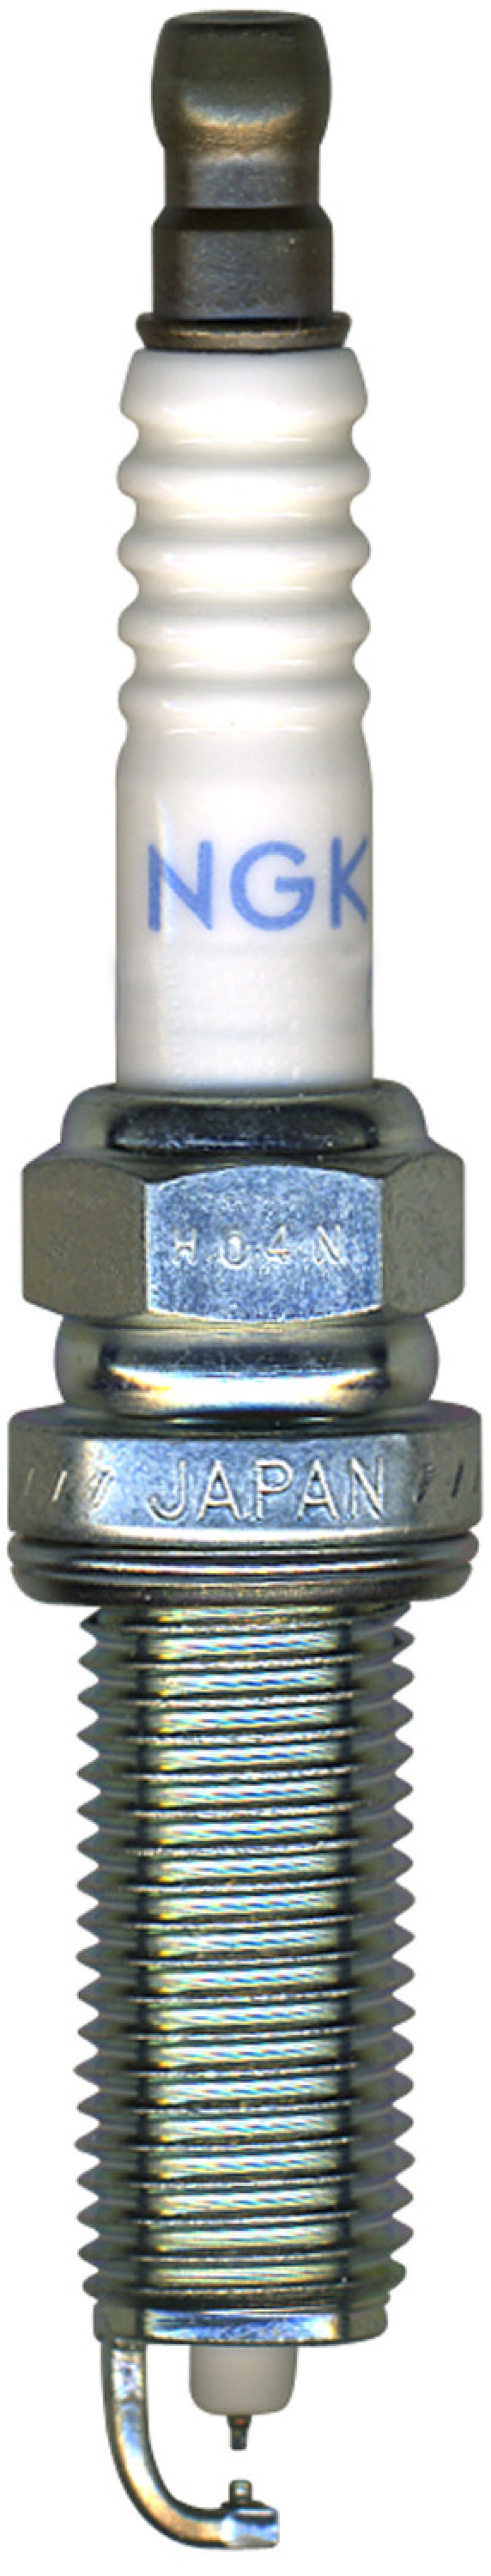 NGK Laser Iridium/Platinum Spark Plug Box of 4 (DILKAR6A11)